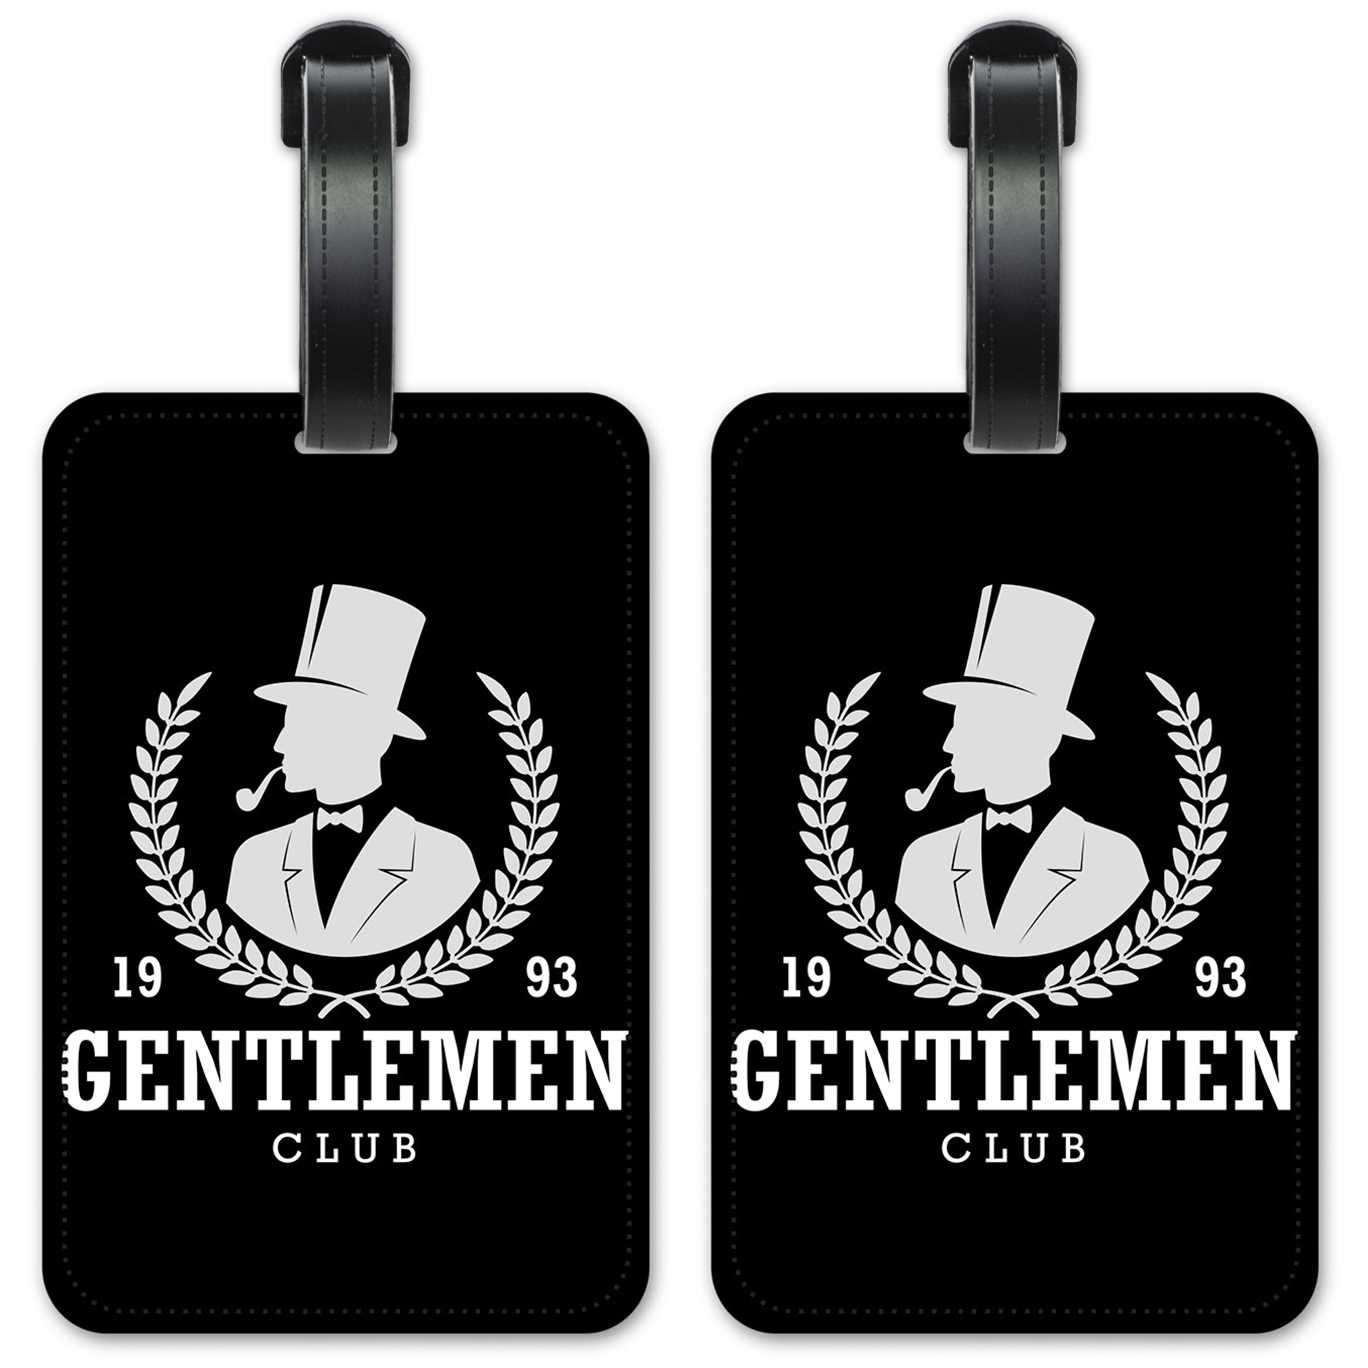 Gentleman's Club 1993 - #2996